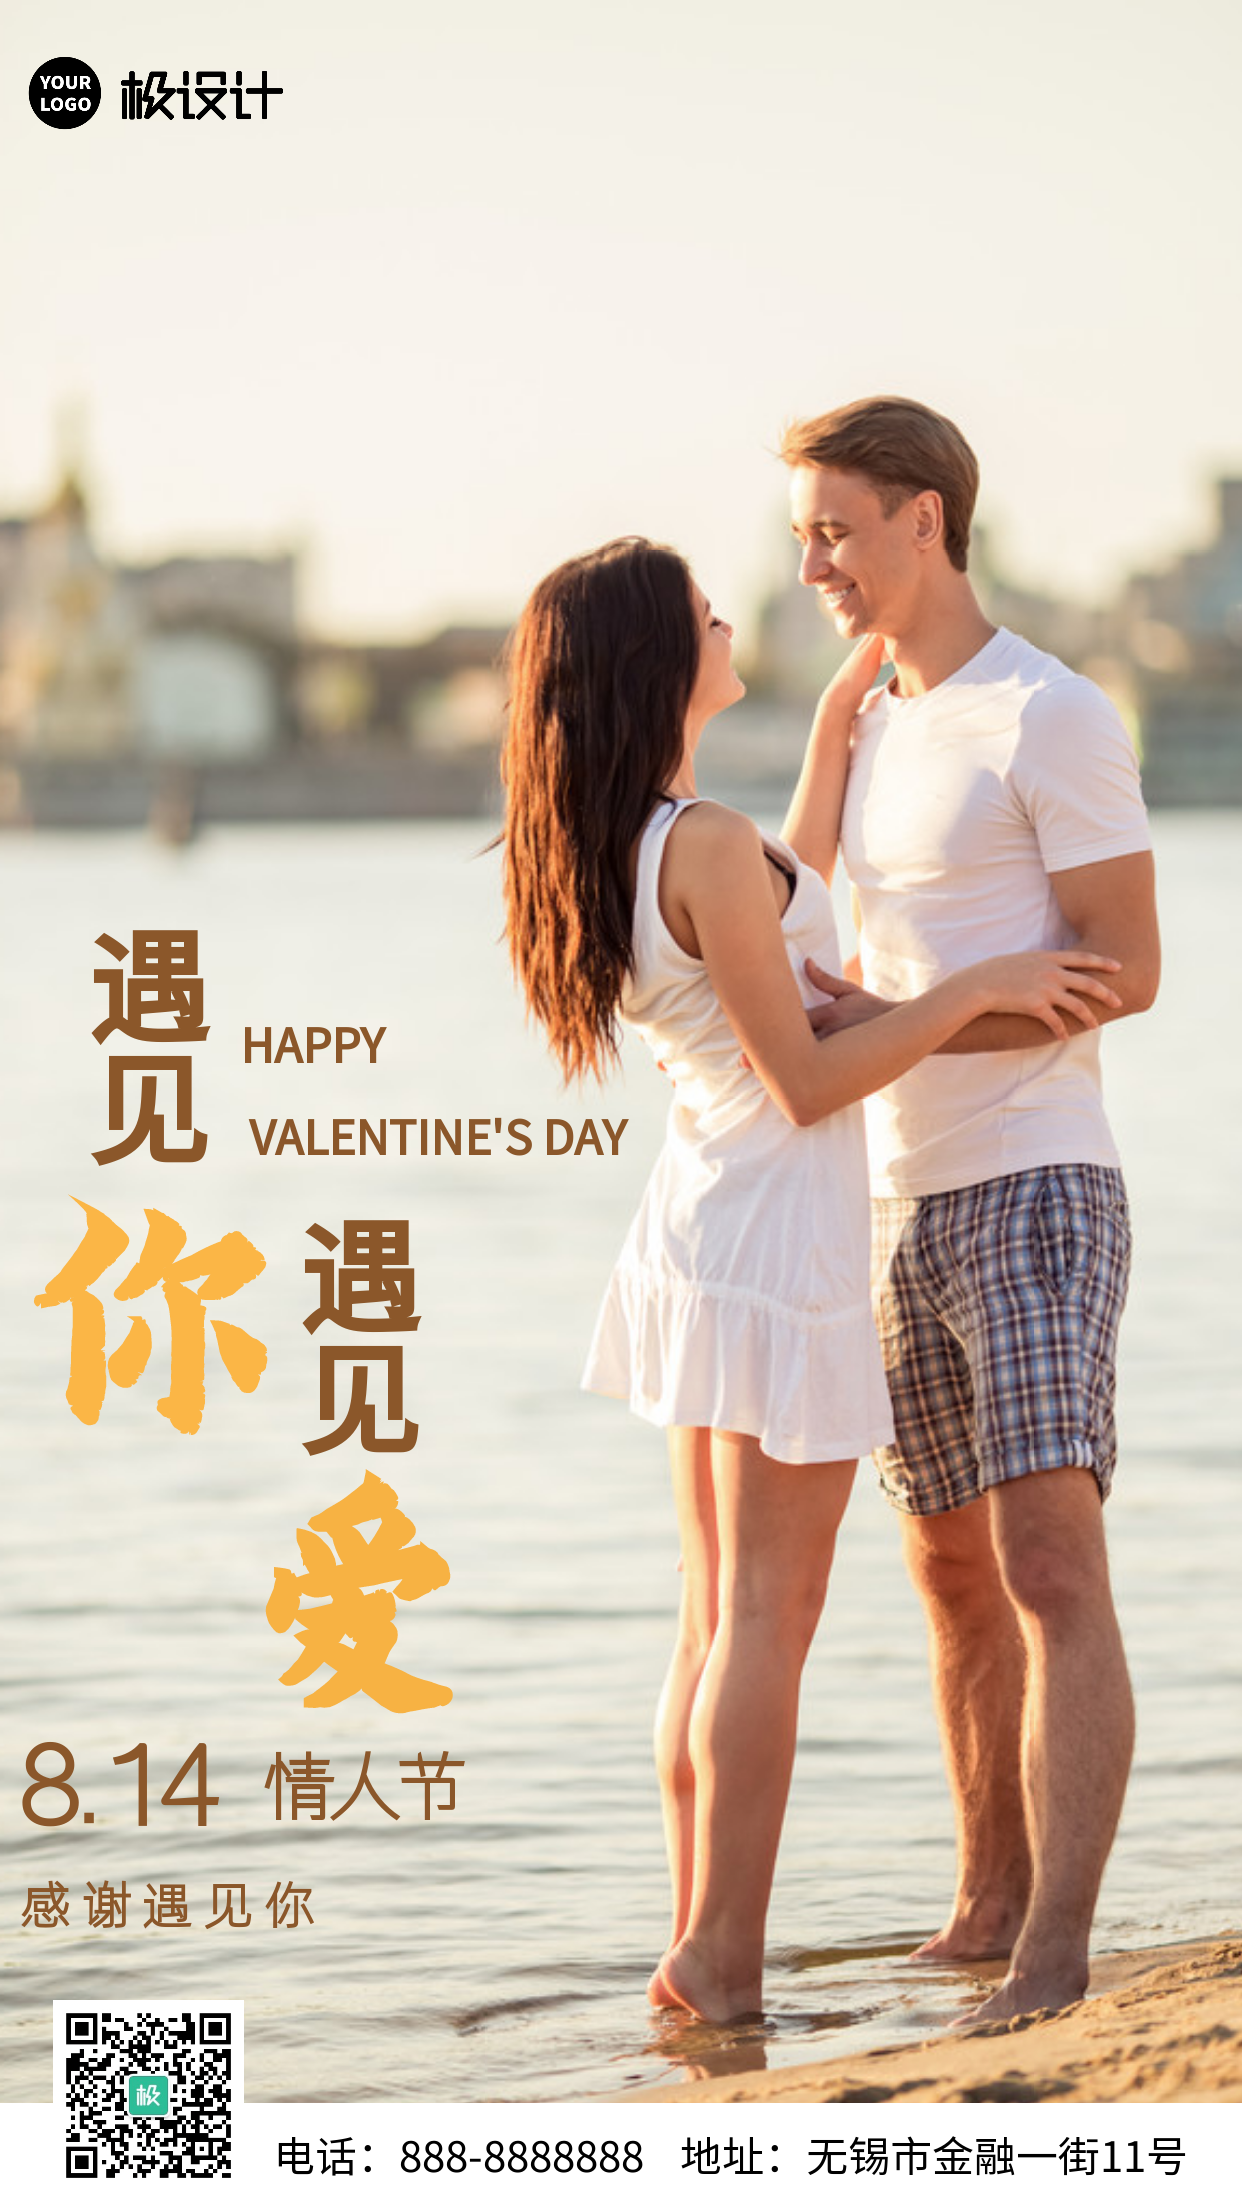 814七夕情人节节日旅行浪漫手机营销海报